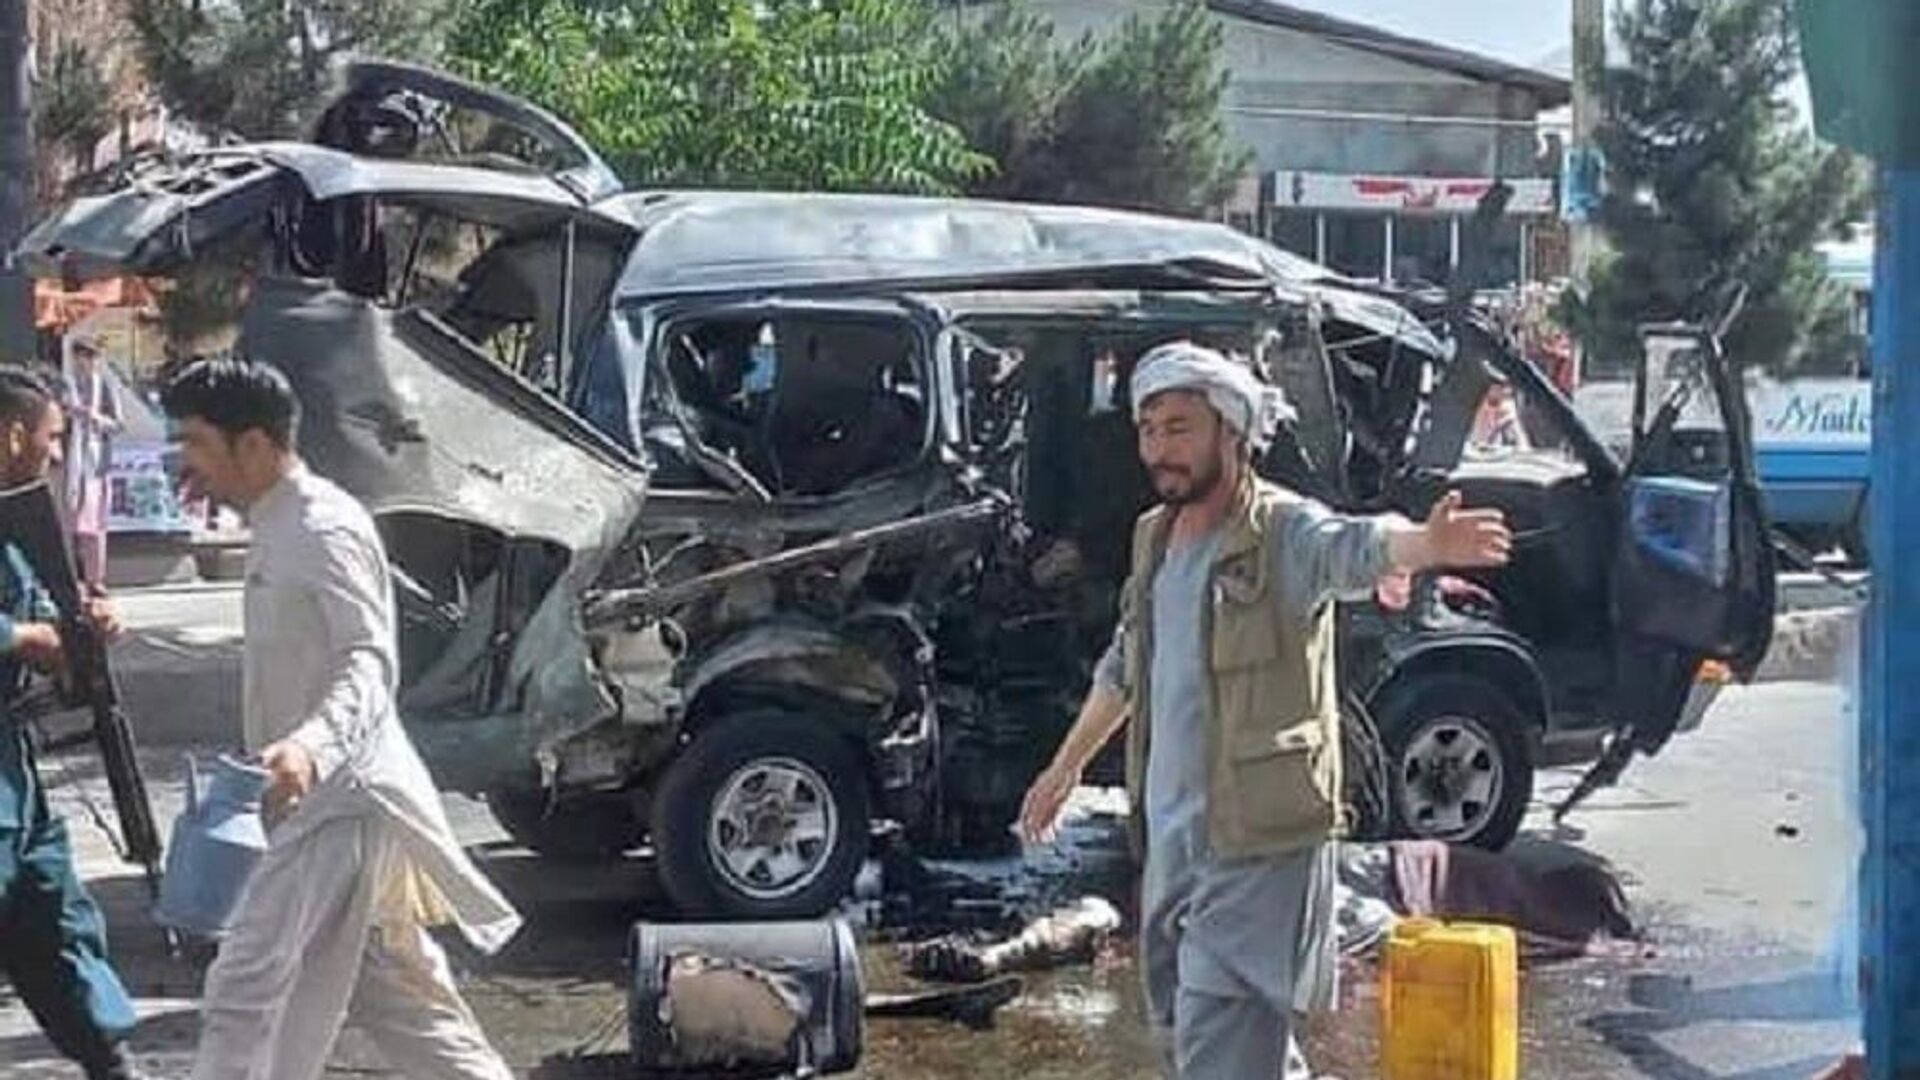 داعش، مسئولیت انفجار امروز در مزار شریف را برعهده گرفت - اسپوتنیک ایران  , 1920, 21.04.2022